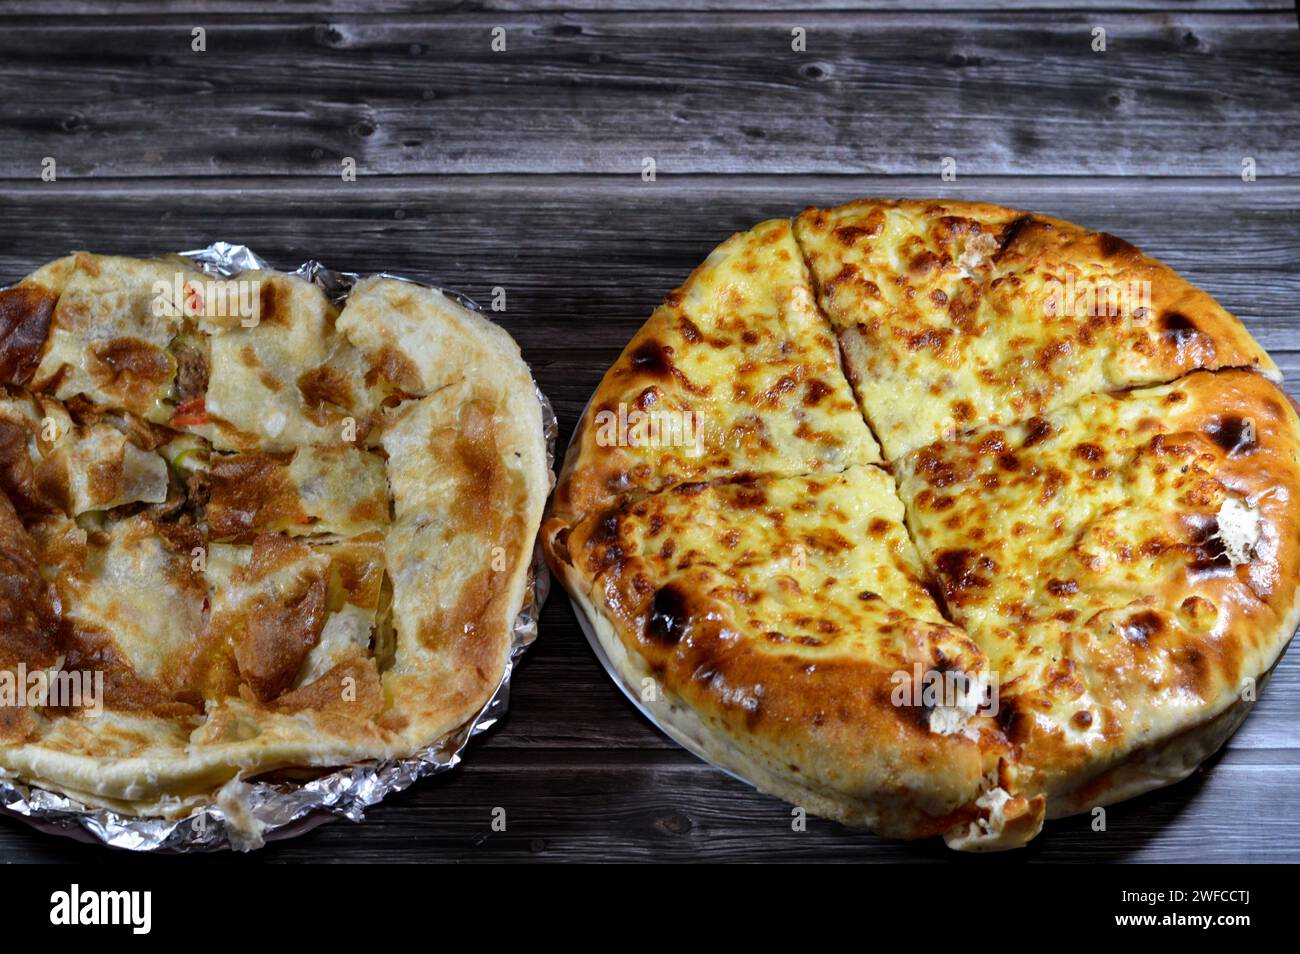 Hintergrund des mehrschichtigen gebackenen Pizzakuchens, besteht aus Schichten von Salami, Grillhähnchen, Käsemischung, Rindfleisch, Wurst, Mozzarella-Käse und Fleischsau Stockfoto